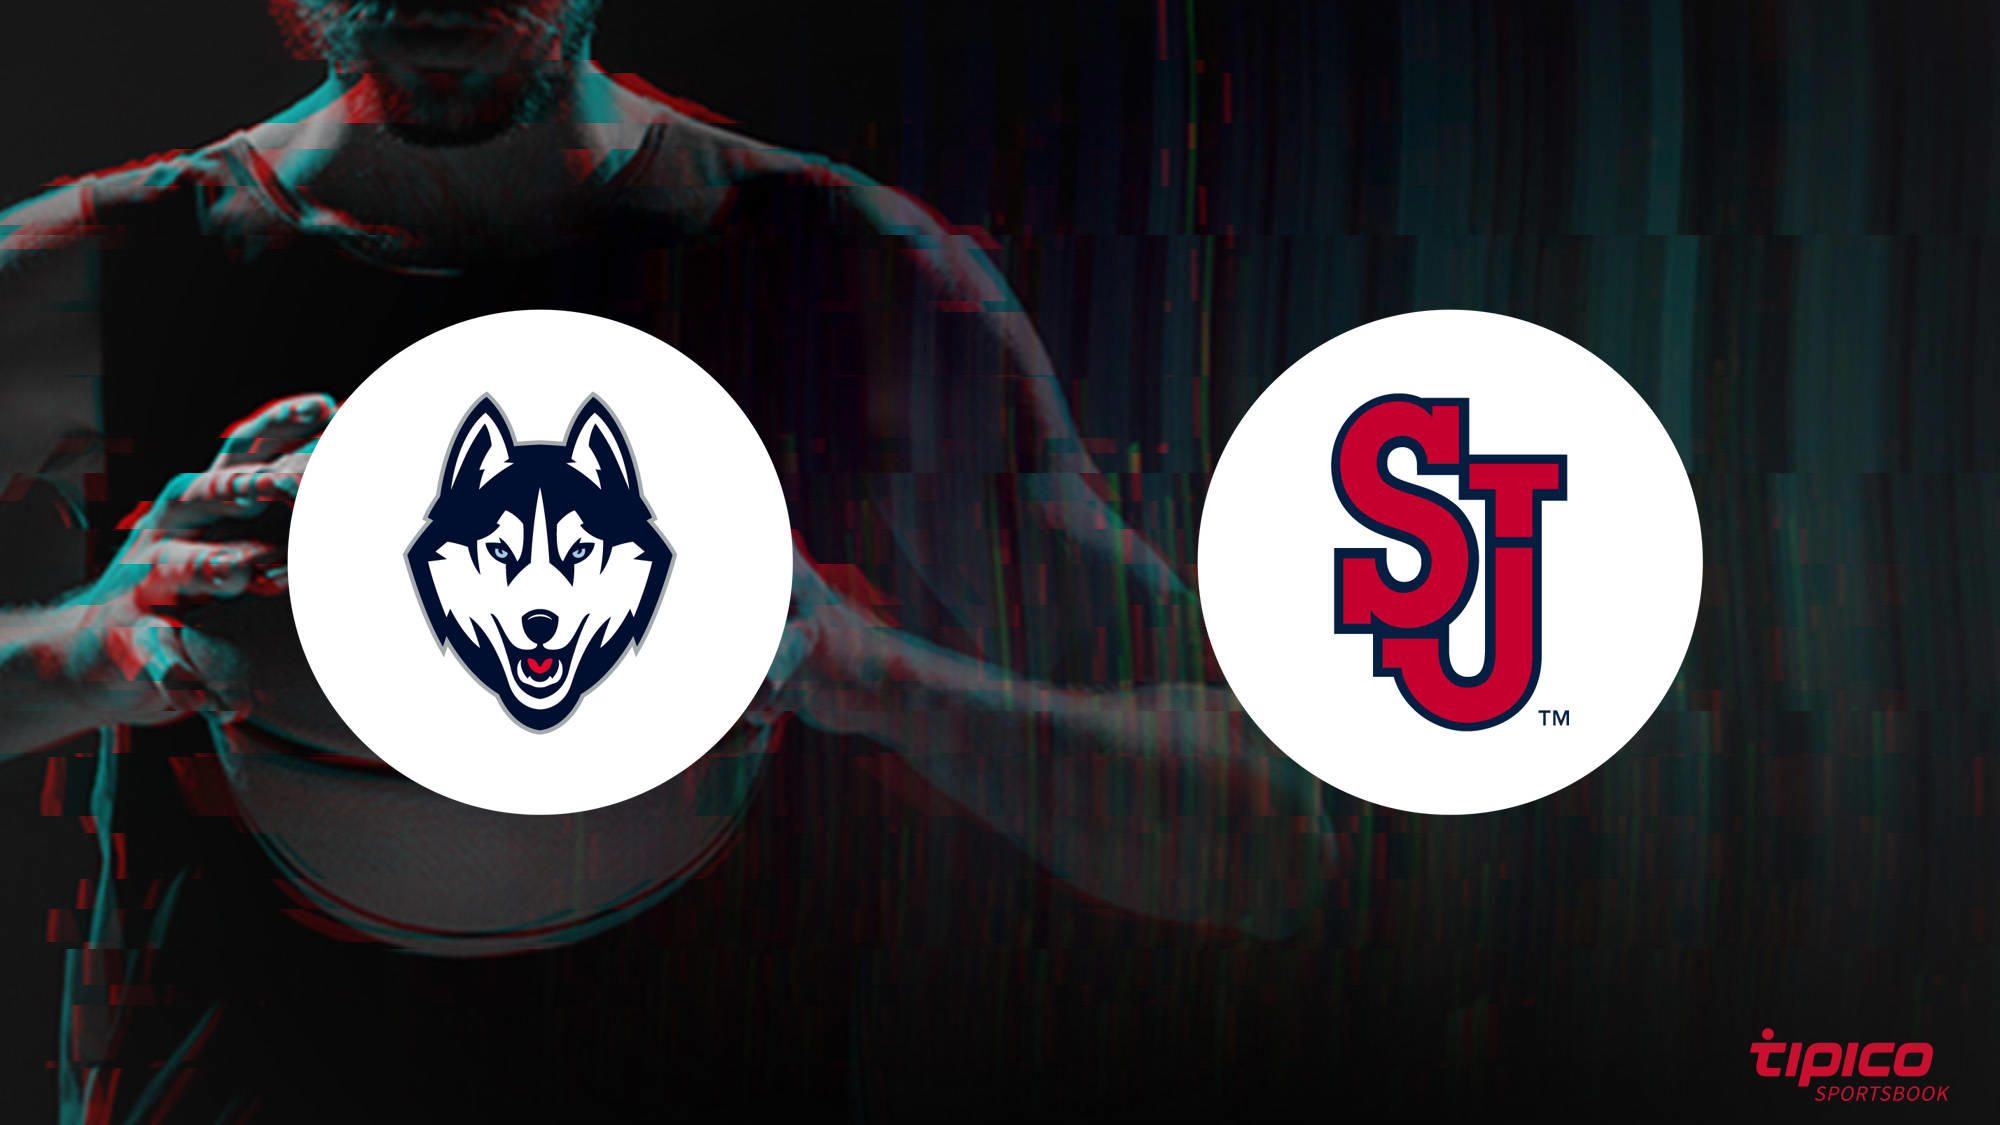 UConn Huskies vs. St. John's (NY) Red Storm Preview